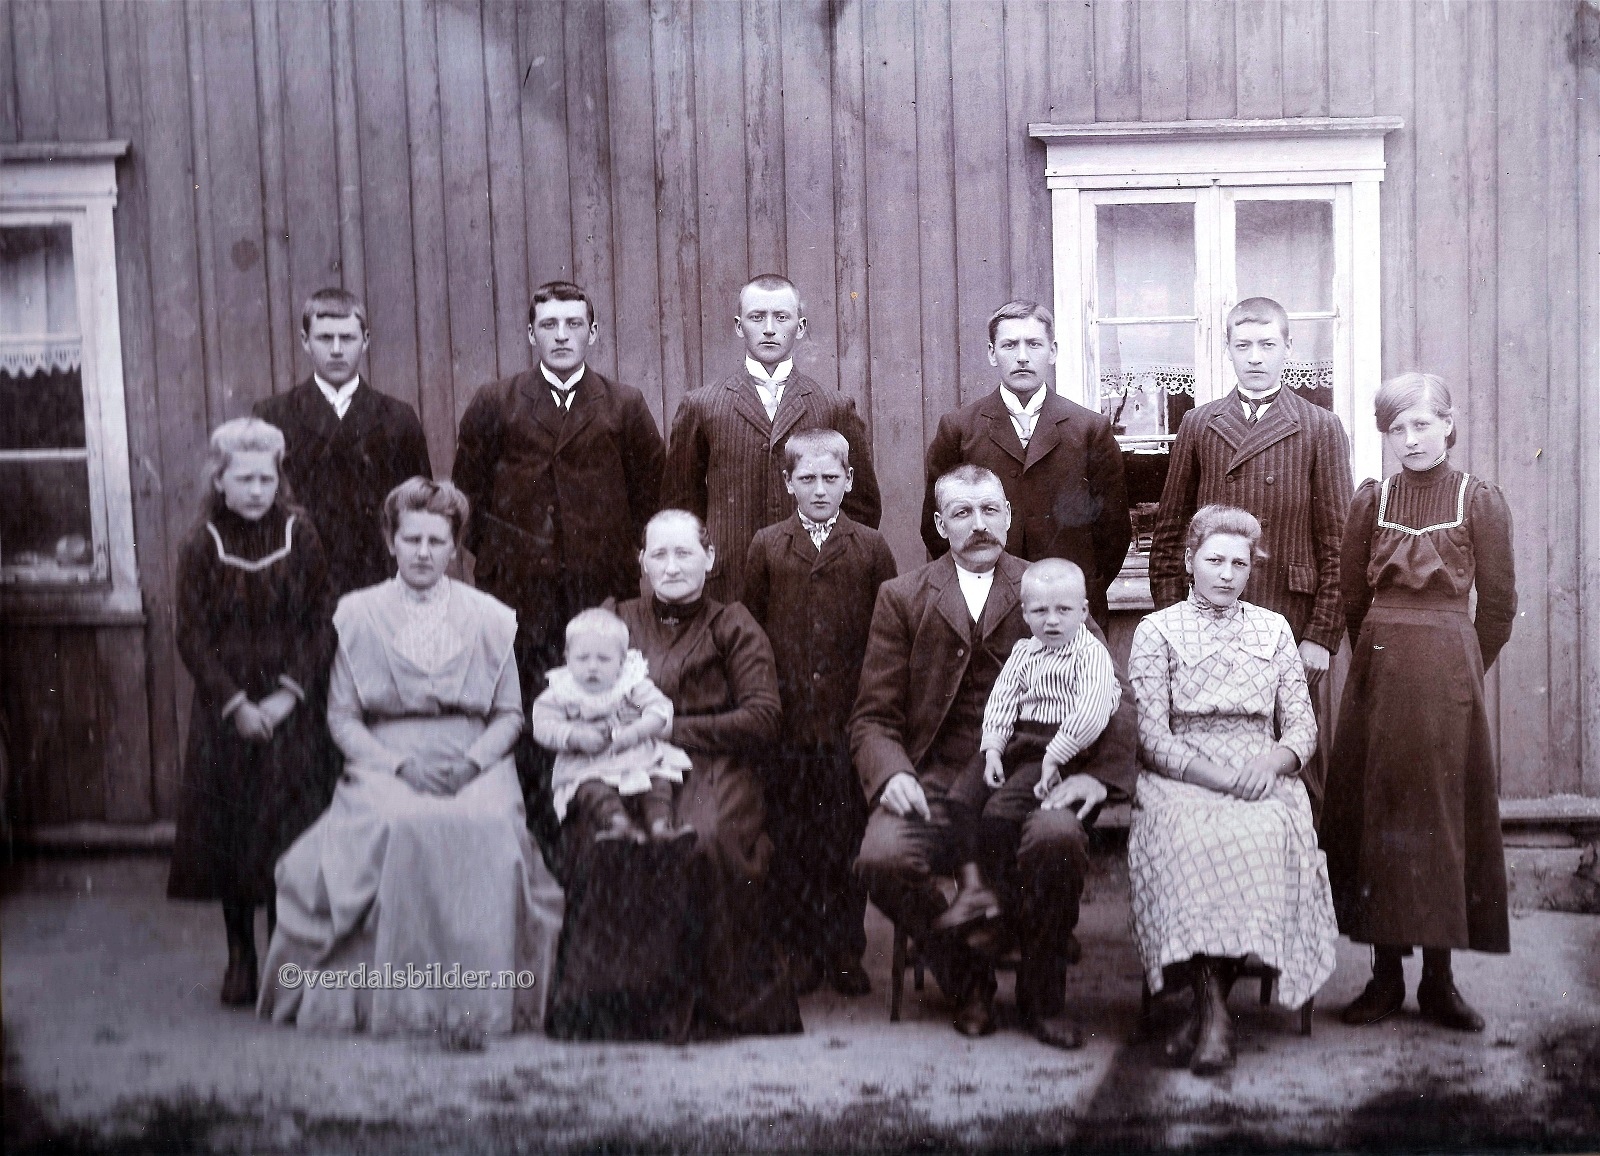  Her med 12 av 13 barn på gården Haugan sommeren 1912. Den trettende, Kari, døde i 1908 bare 2 år gammel.  Utlånt Tom Madell med opplysninger og navn.